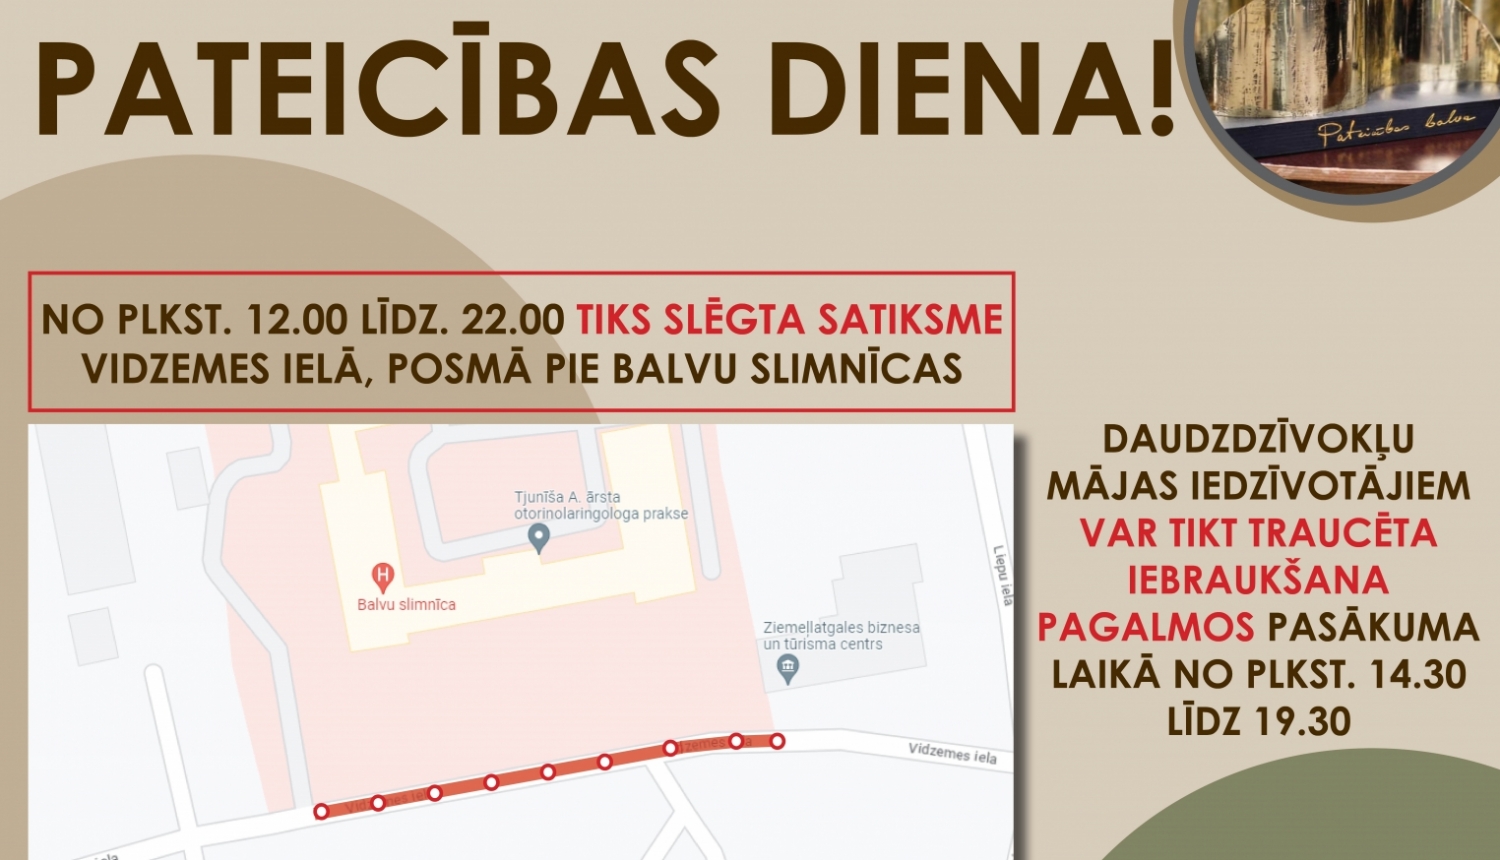 Informējam, ka 24. augustā no plkst. 12.00 līdz 22.00 tiks slēgta satiksme Balvos, Vidzemes ielā (pie Balvu slimnīcas).